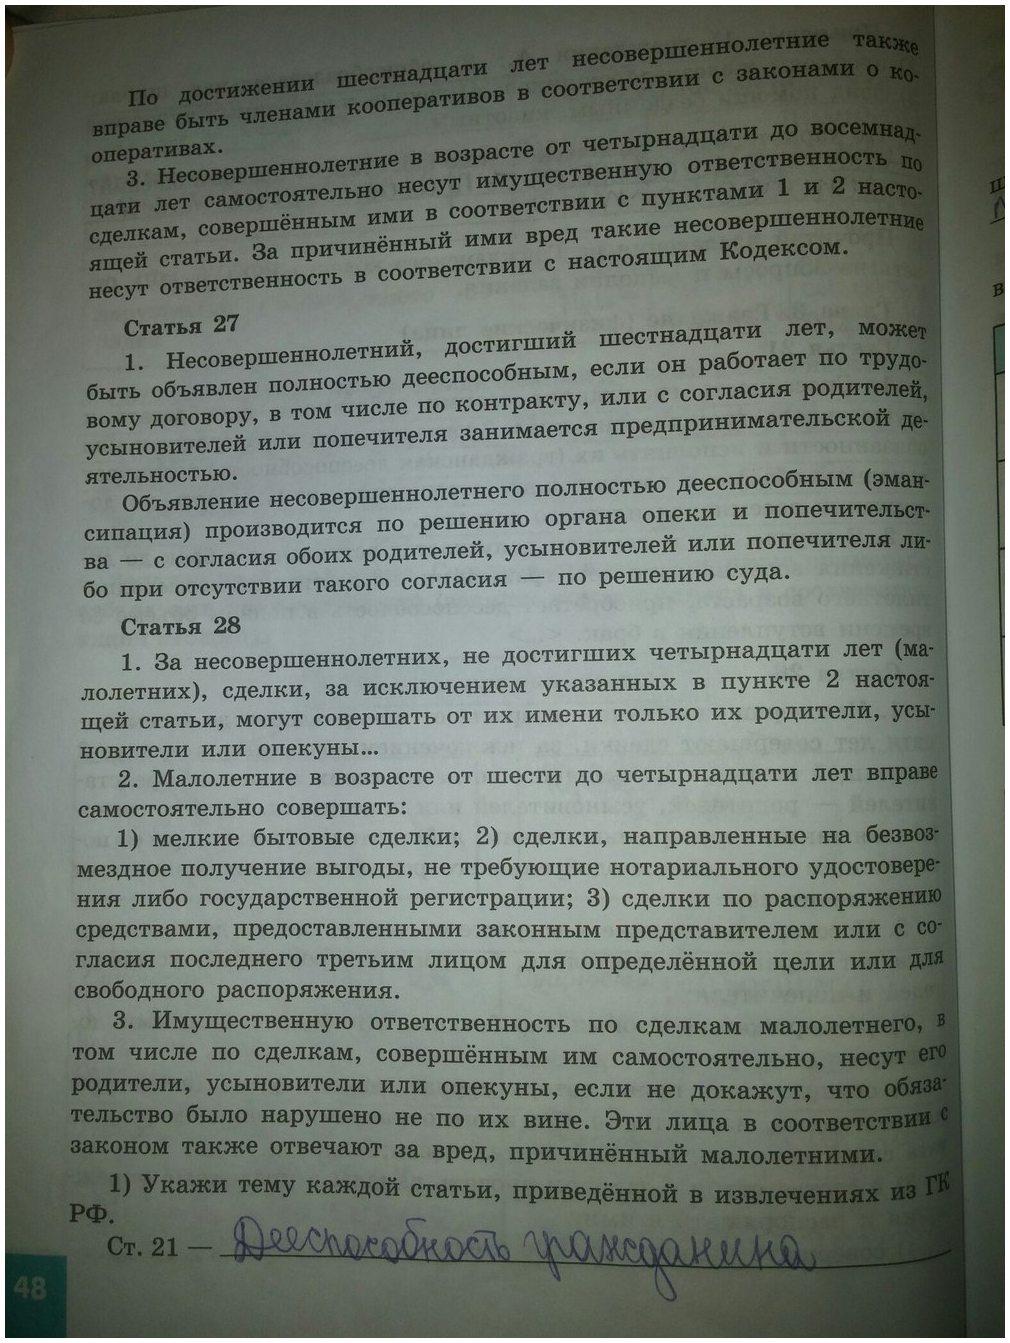 гдз 9 класс рабочая тетрадь страница 48 обществознание Котова, Лискова